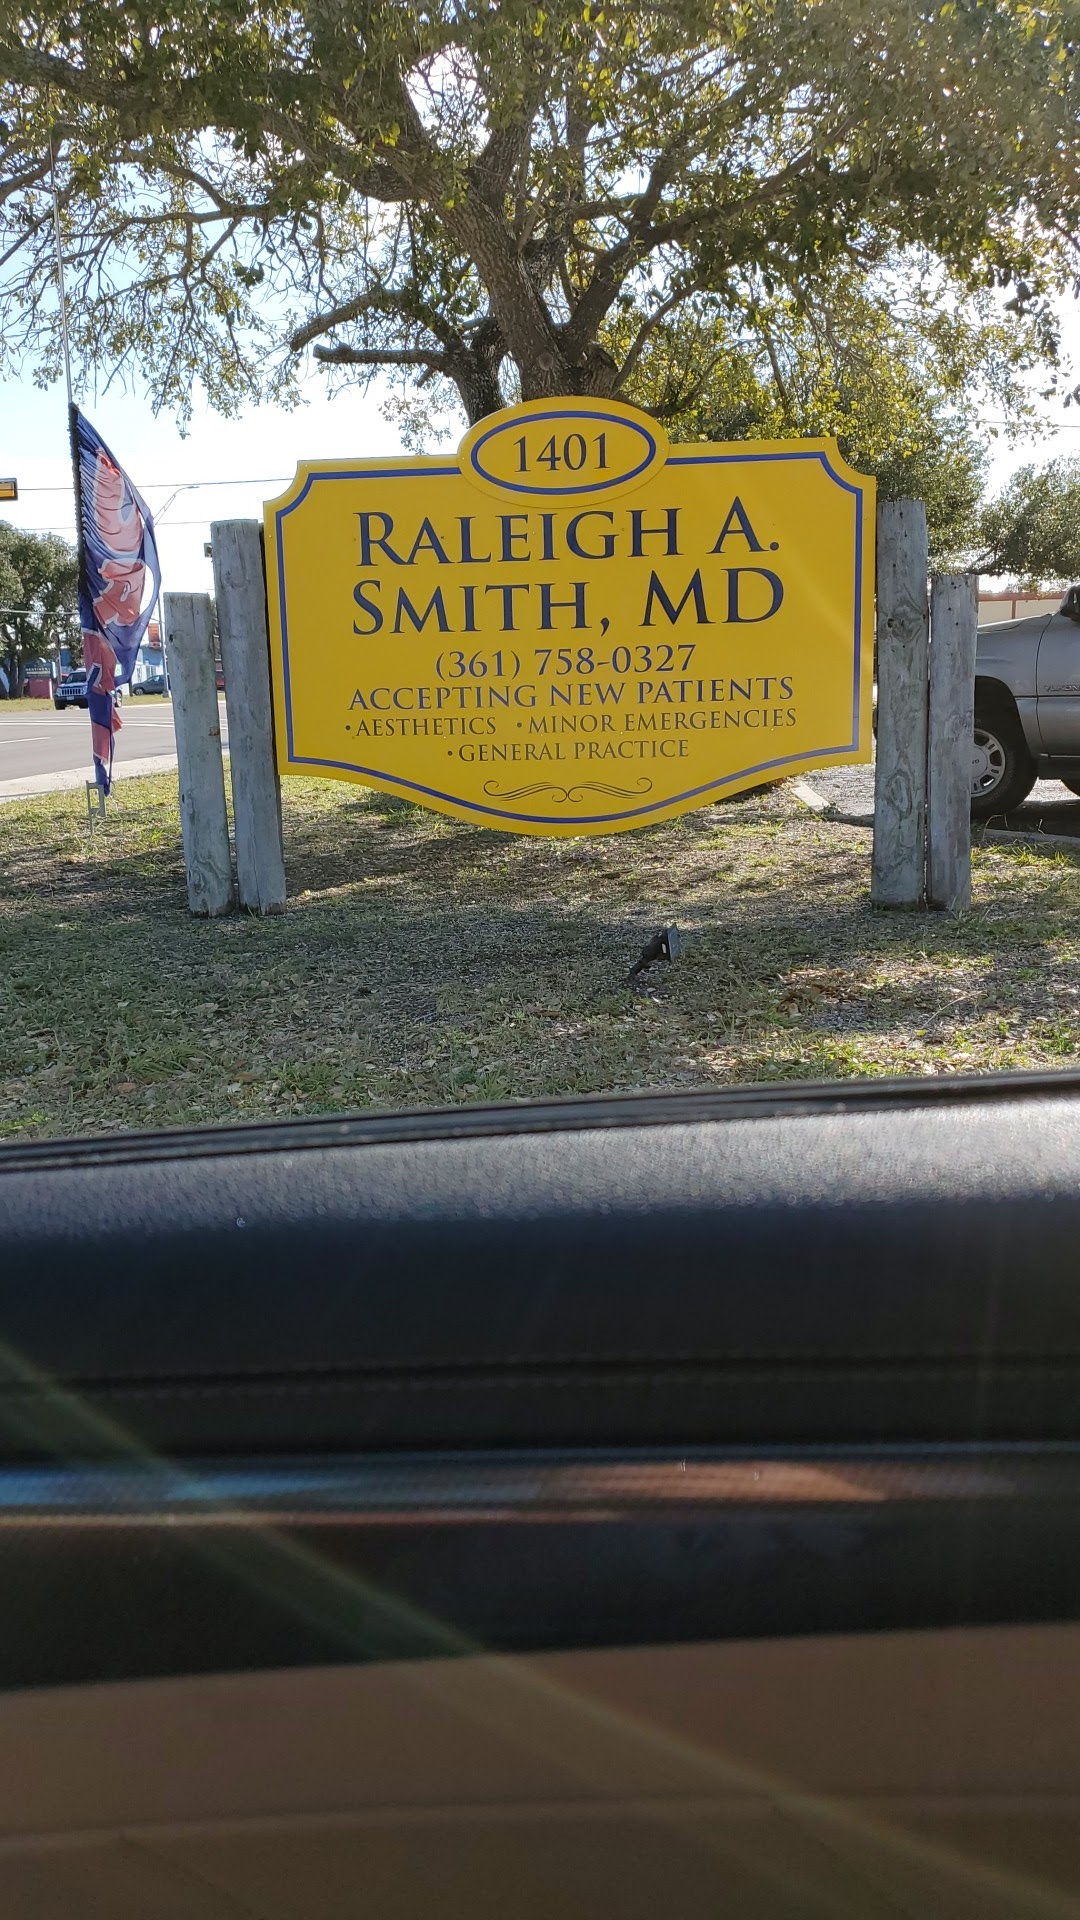 Raleigh A. Smith, MD, FACS 1401 W Wheeler Ave, Aransas Pass Texas 78336